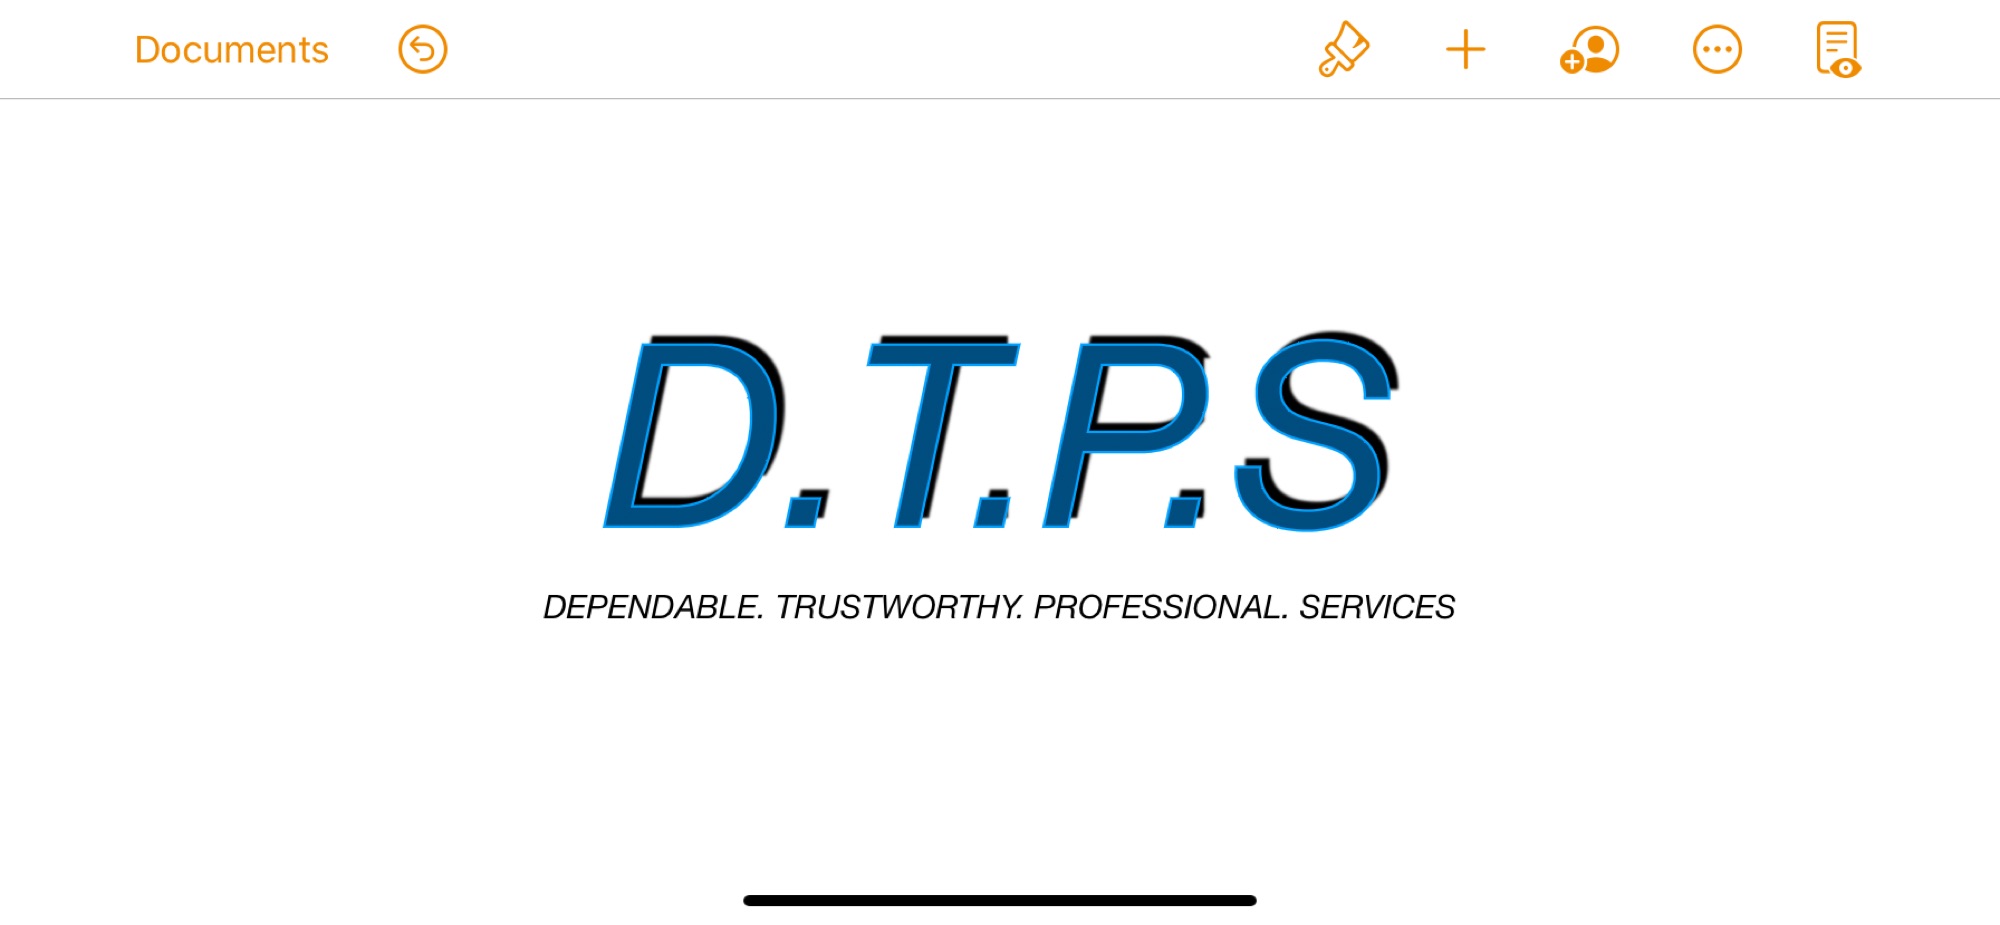 DTPS Handyman Services - Home  Facebook Logo